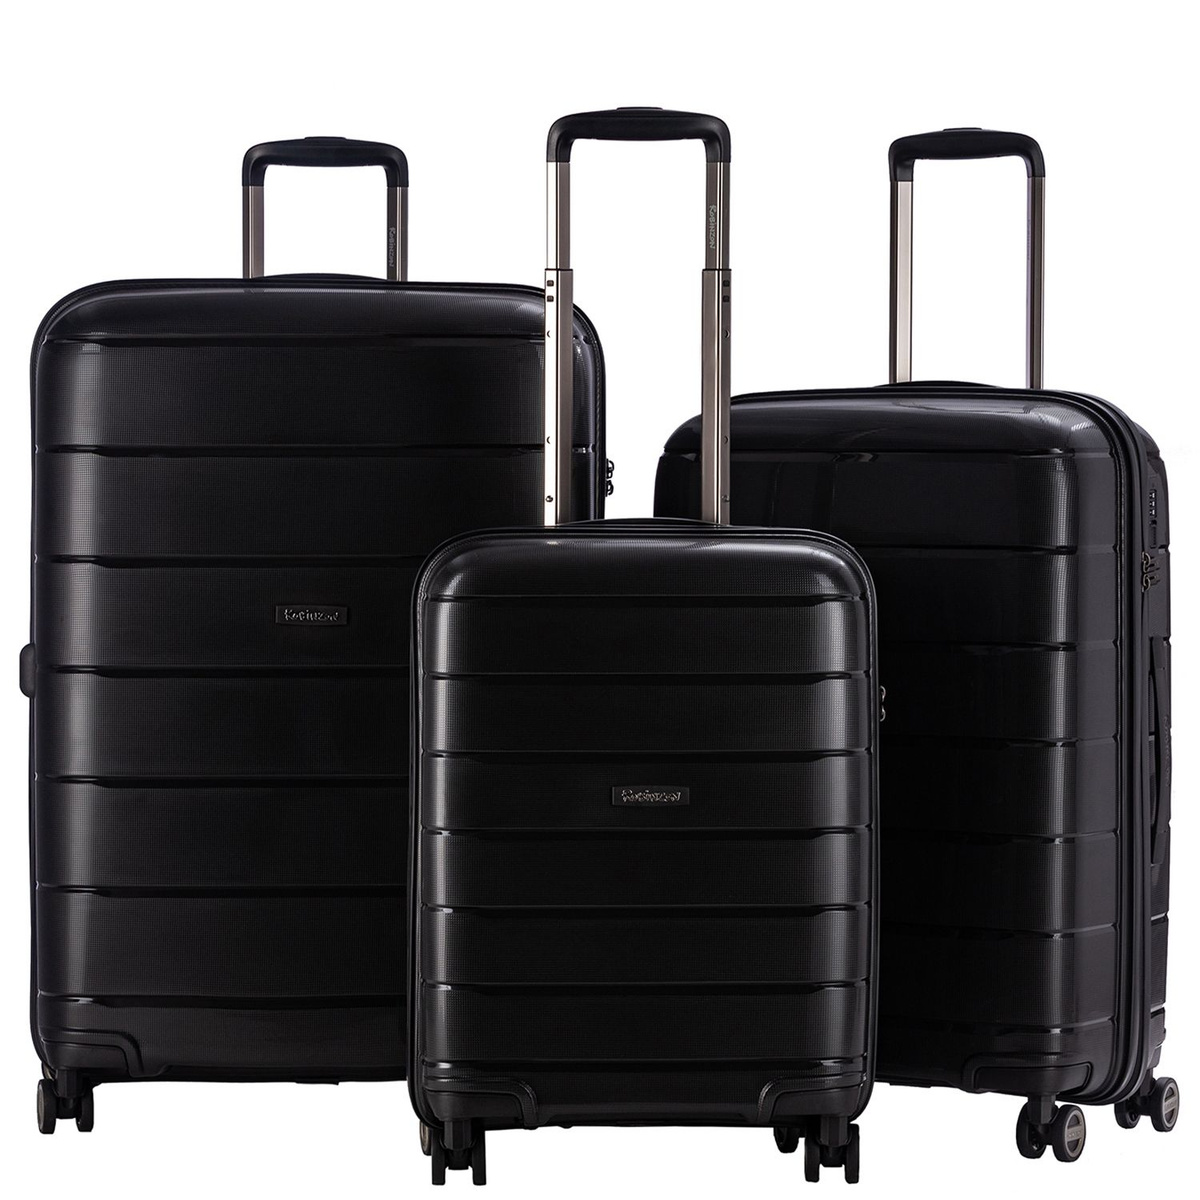 Размер чемодана большой L (70-100 см), что отлично подойдёт для длительных или семейных поездок.